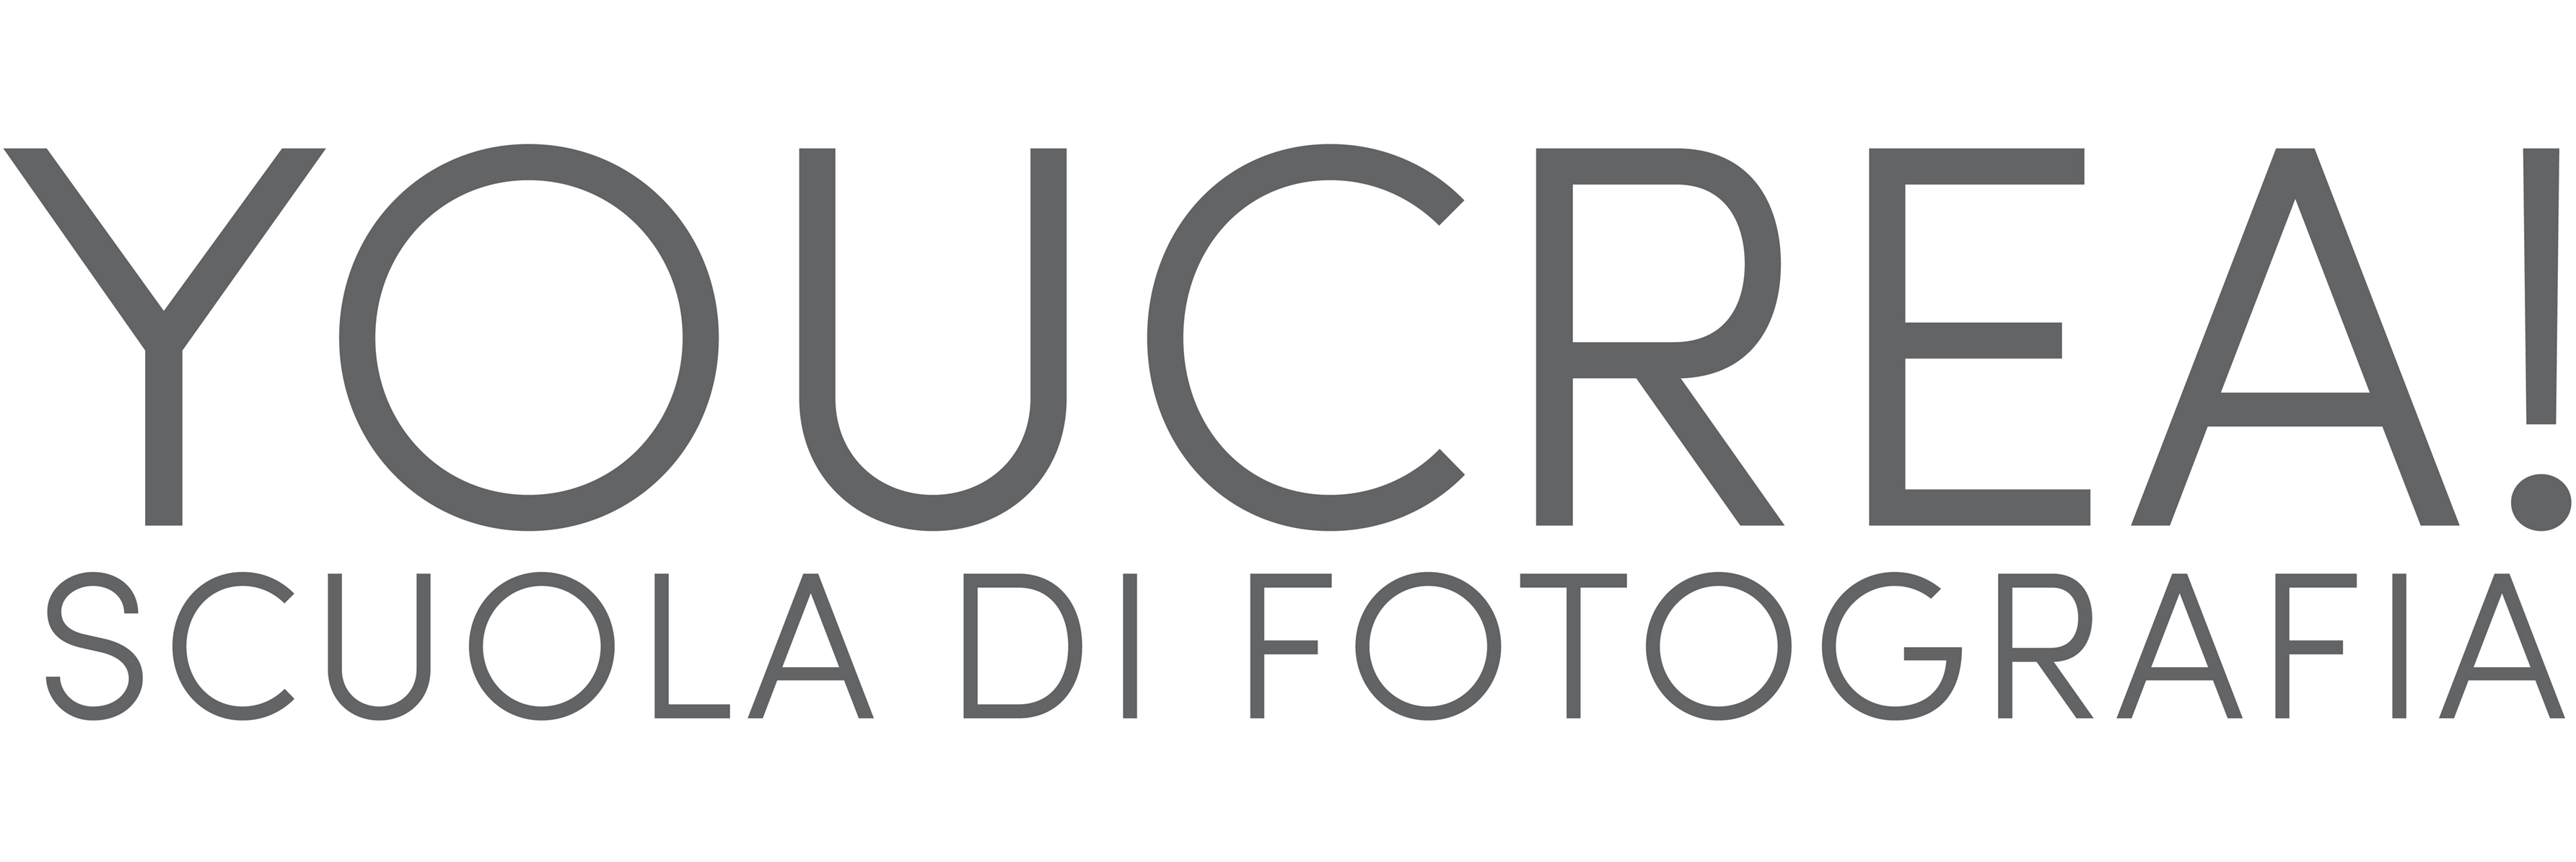 YouCrea! Scuola di Fotografia Firenze